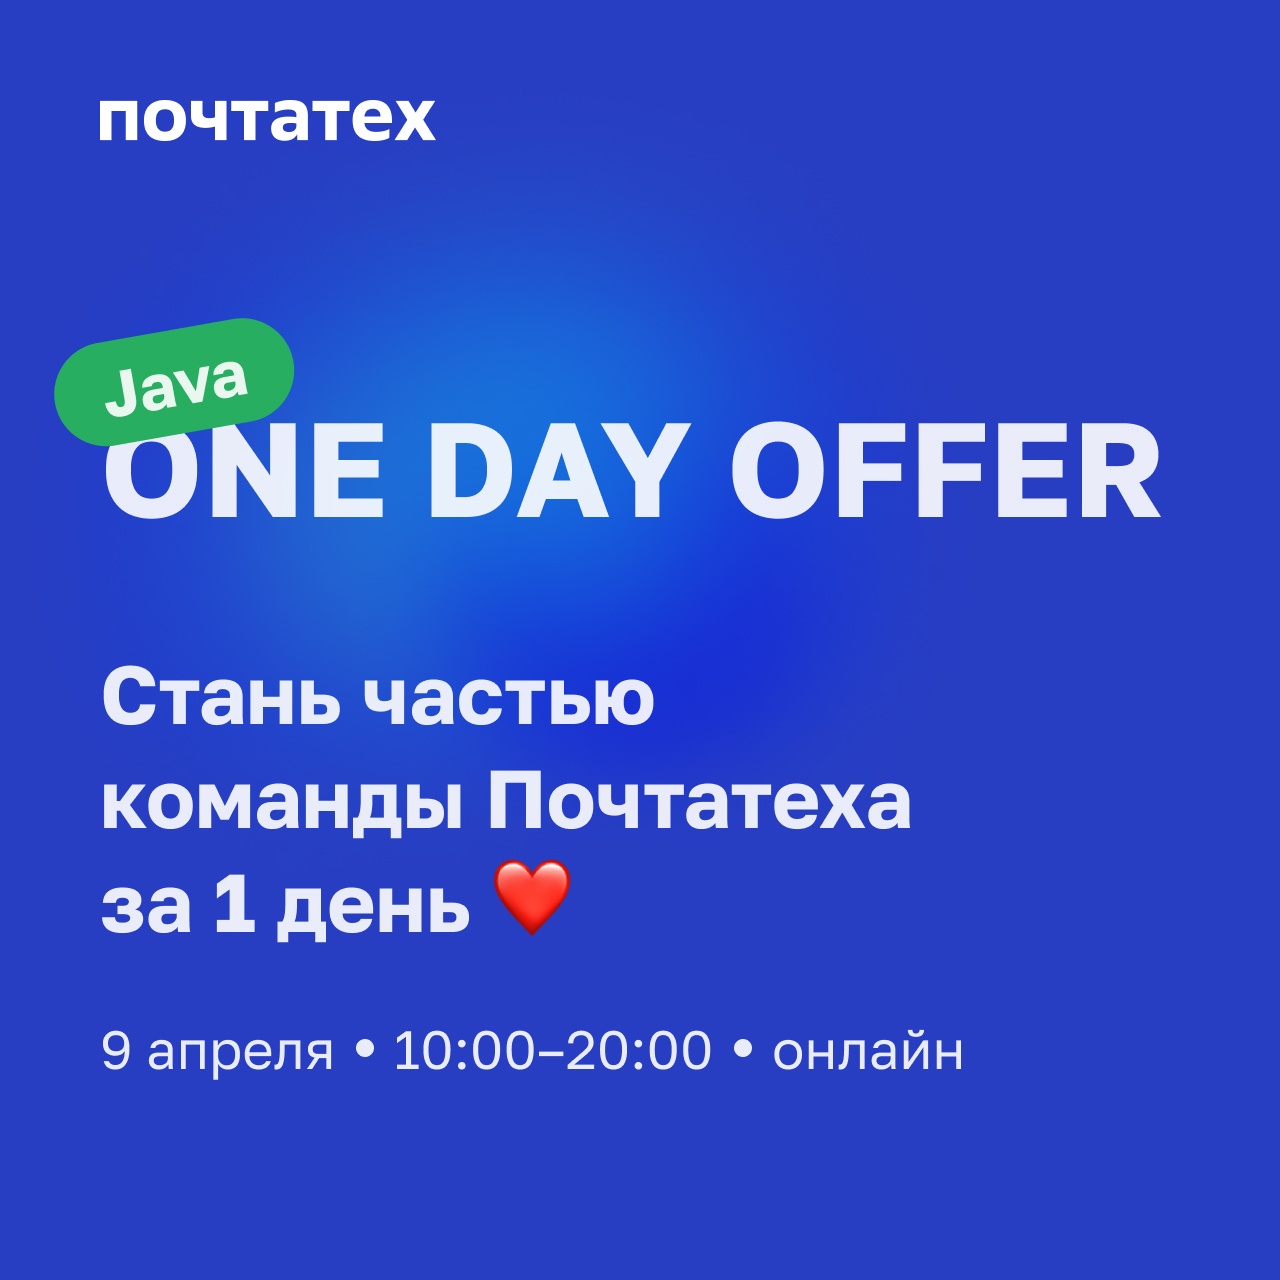 Java One day offer от Почтатеха - 1